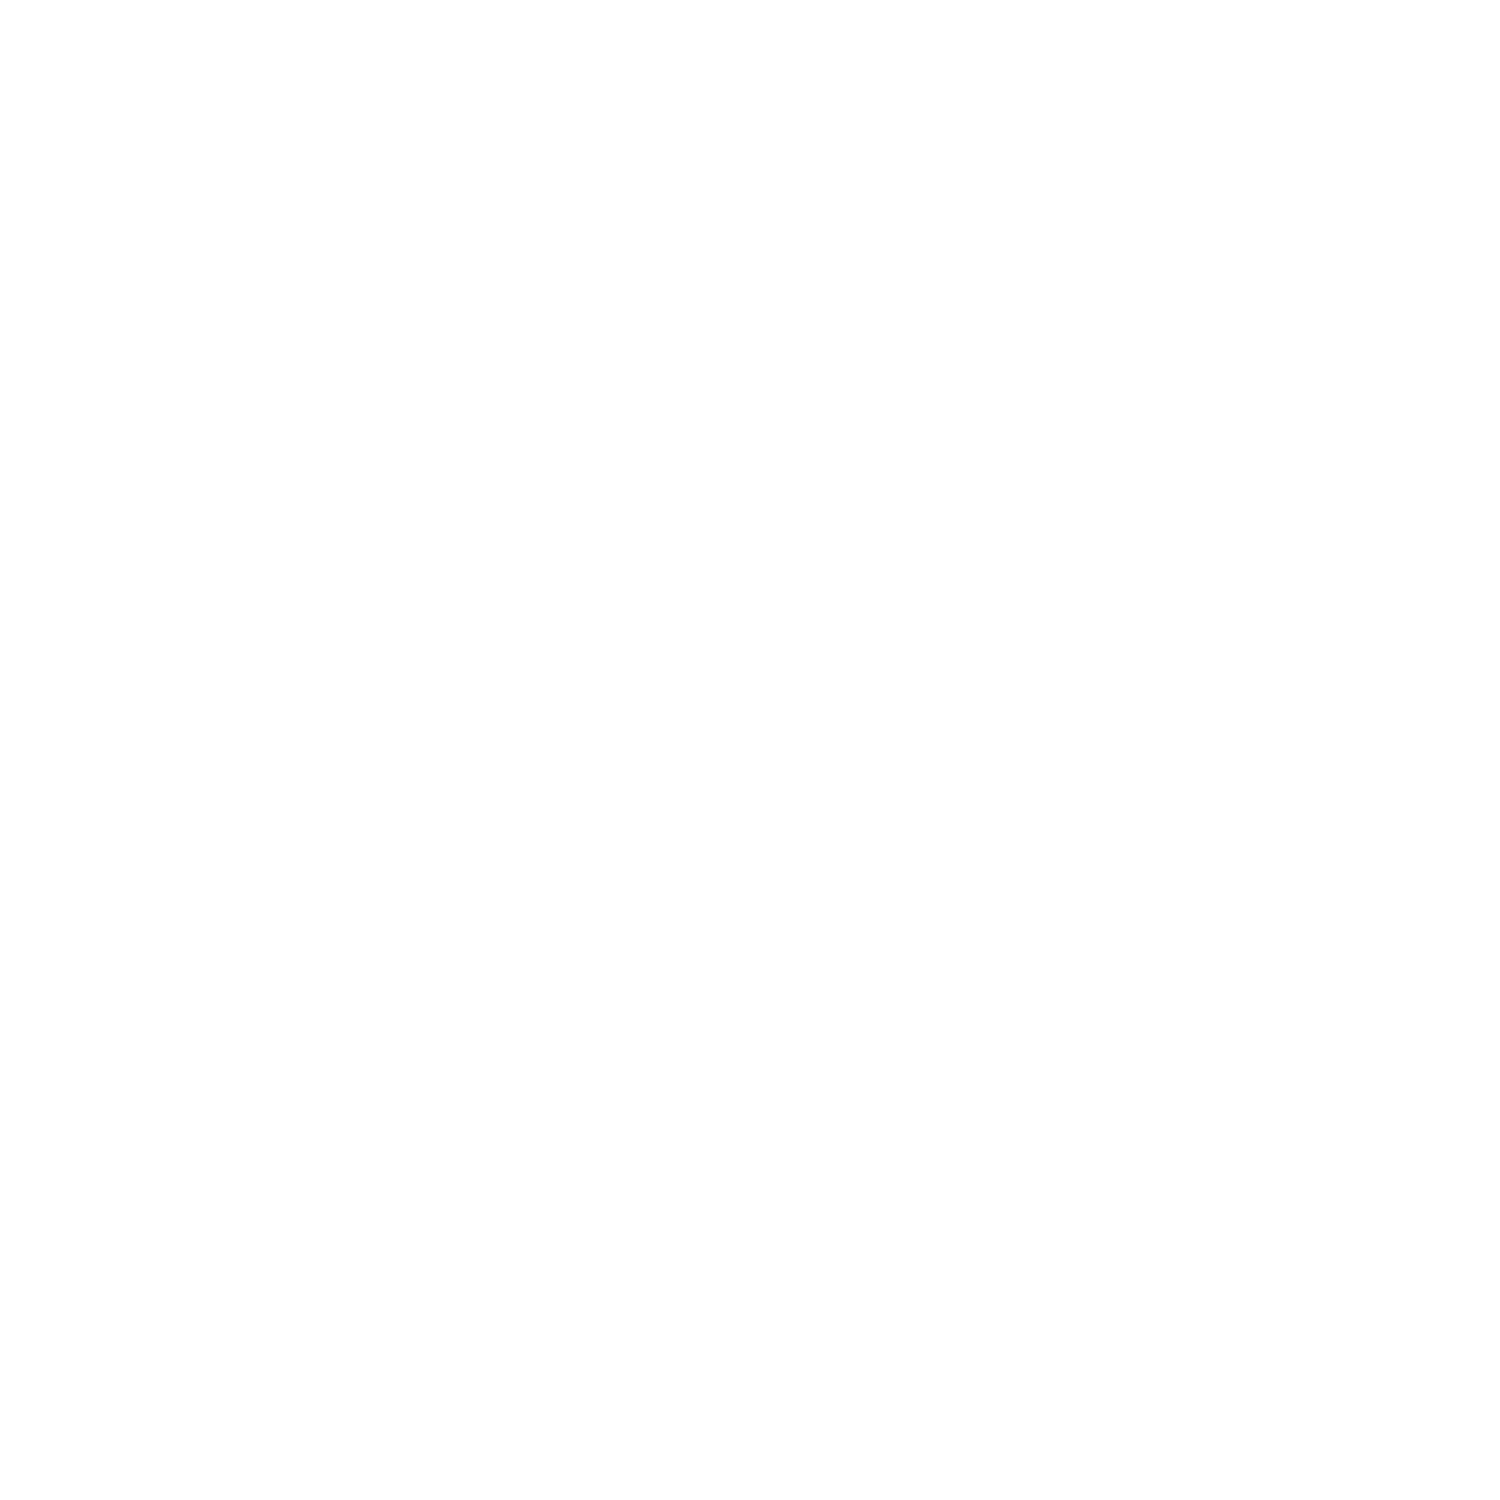 La Bicycletterie du Cantal